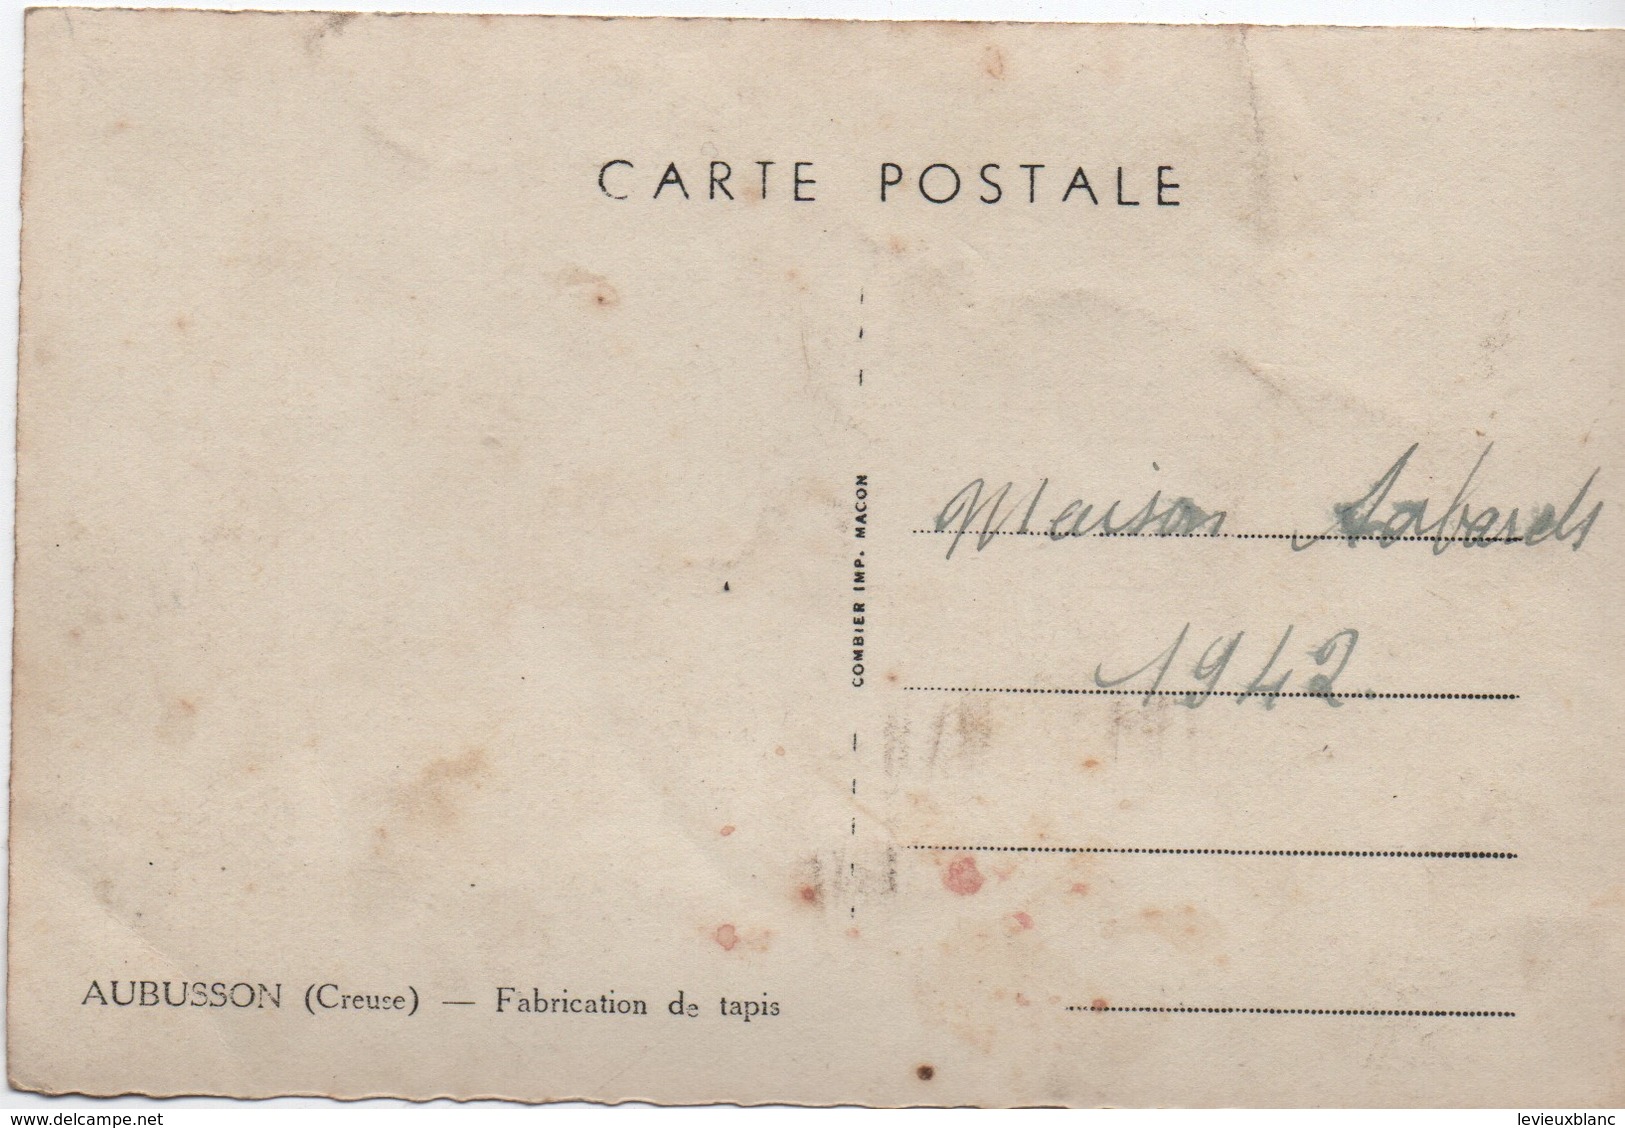 Carte Postale Ancienne / AUBUSSON/ Creuse/Fabrication De Tapis/ Maison Sabards/1942    PHOTN387 - Professions